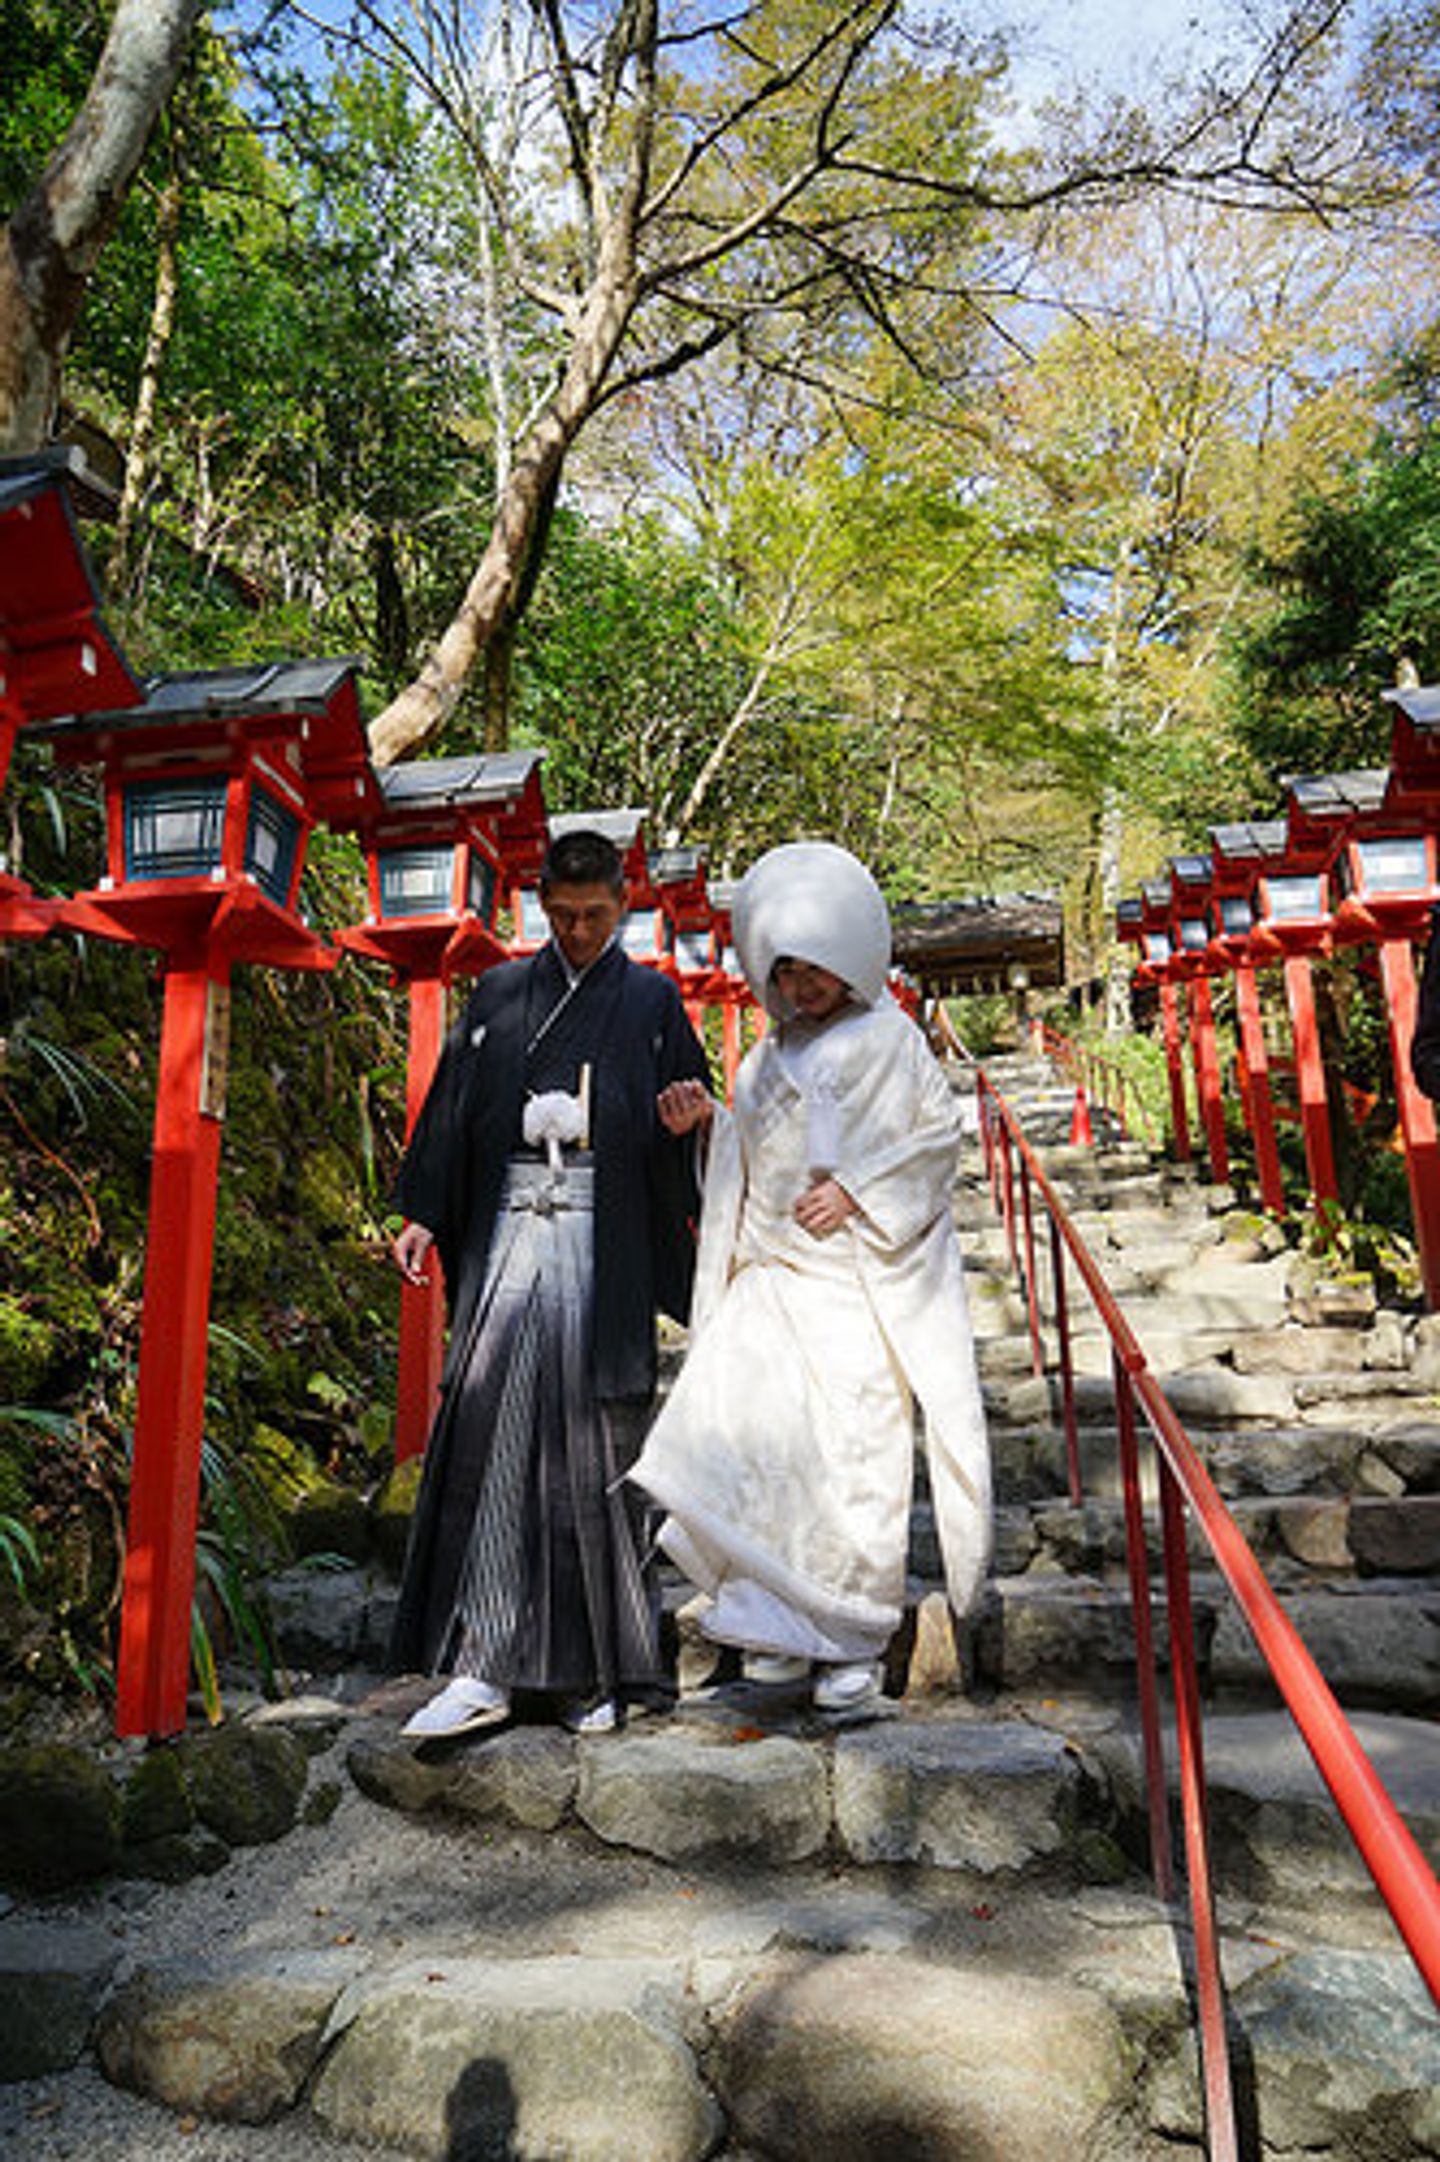 到貴船神社參加日本傳統婚禮 神前結婚式 讓人徹底感受日本的傳統文化 好夢幻 好莊嚴 日本 關西 旅行酒吧